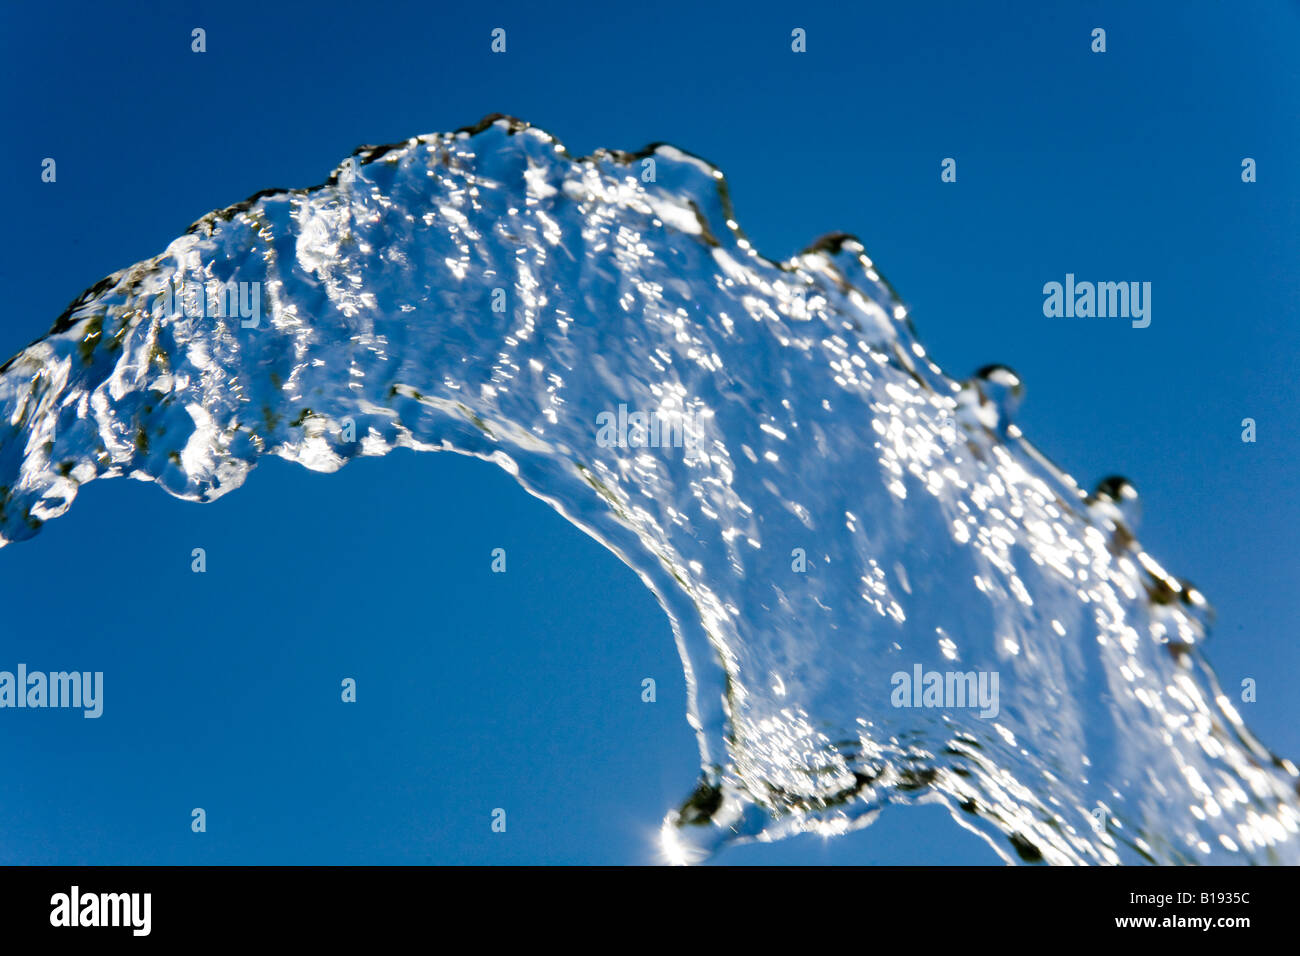 Chorro de agua congelada contra un cielo azul Foto de stock